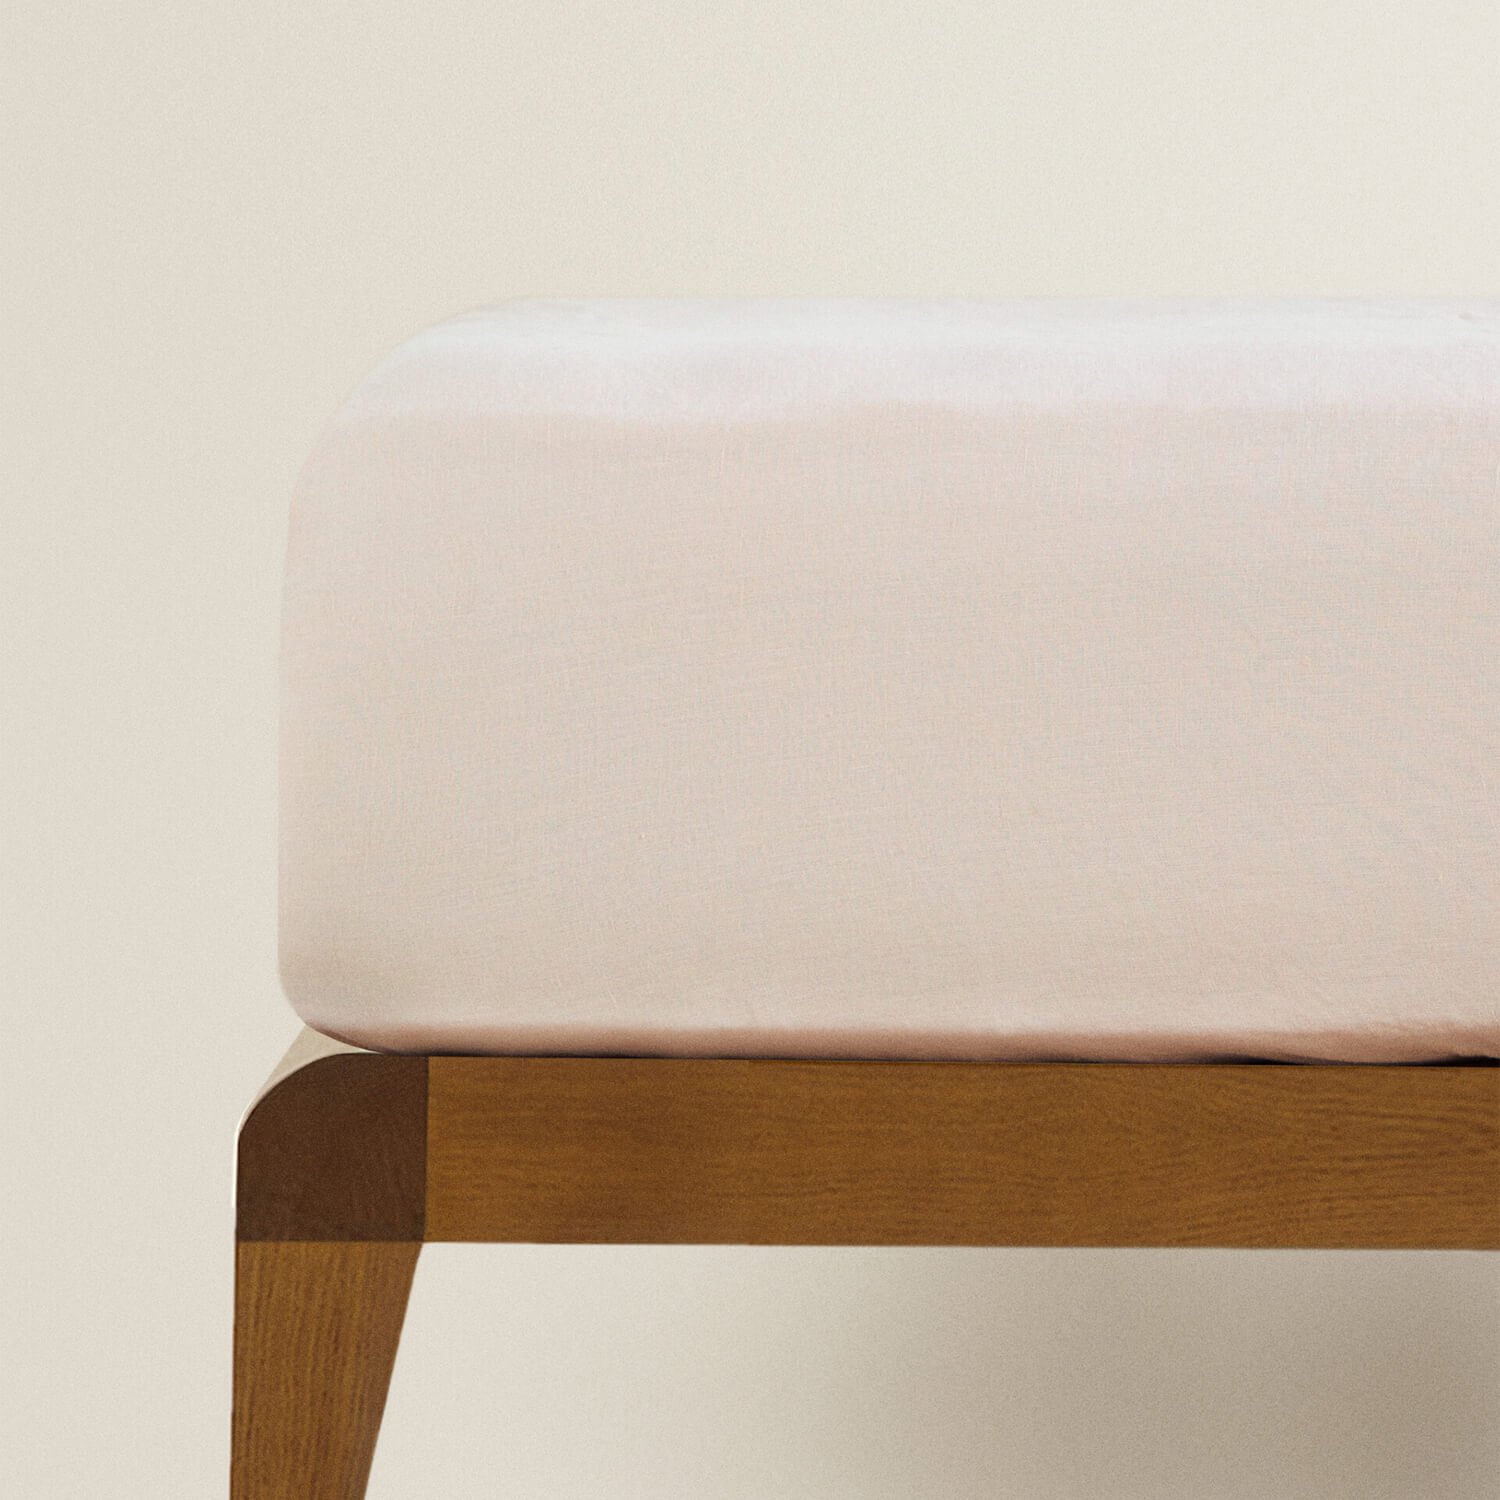 Простыня на резинке Zara Home Children’s Washed Linen, розовый простыня натяжная однотонная из стираного льна 90 x 190 см розовый